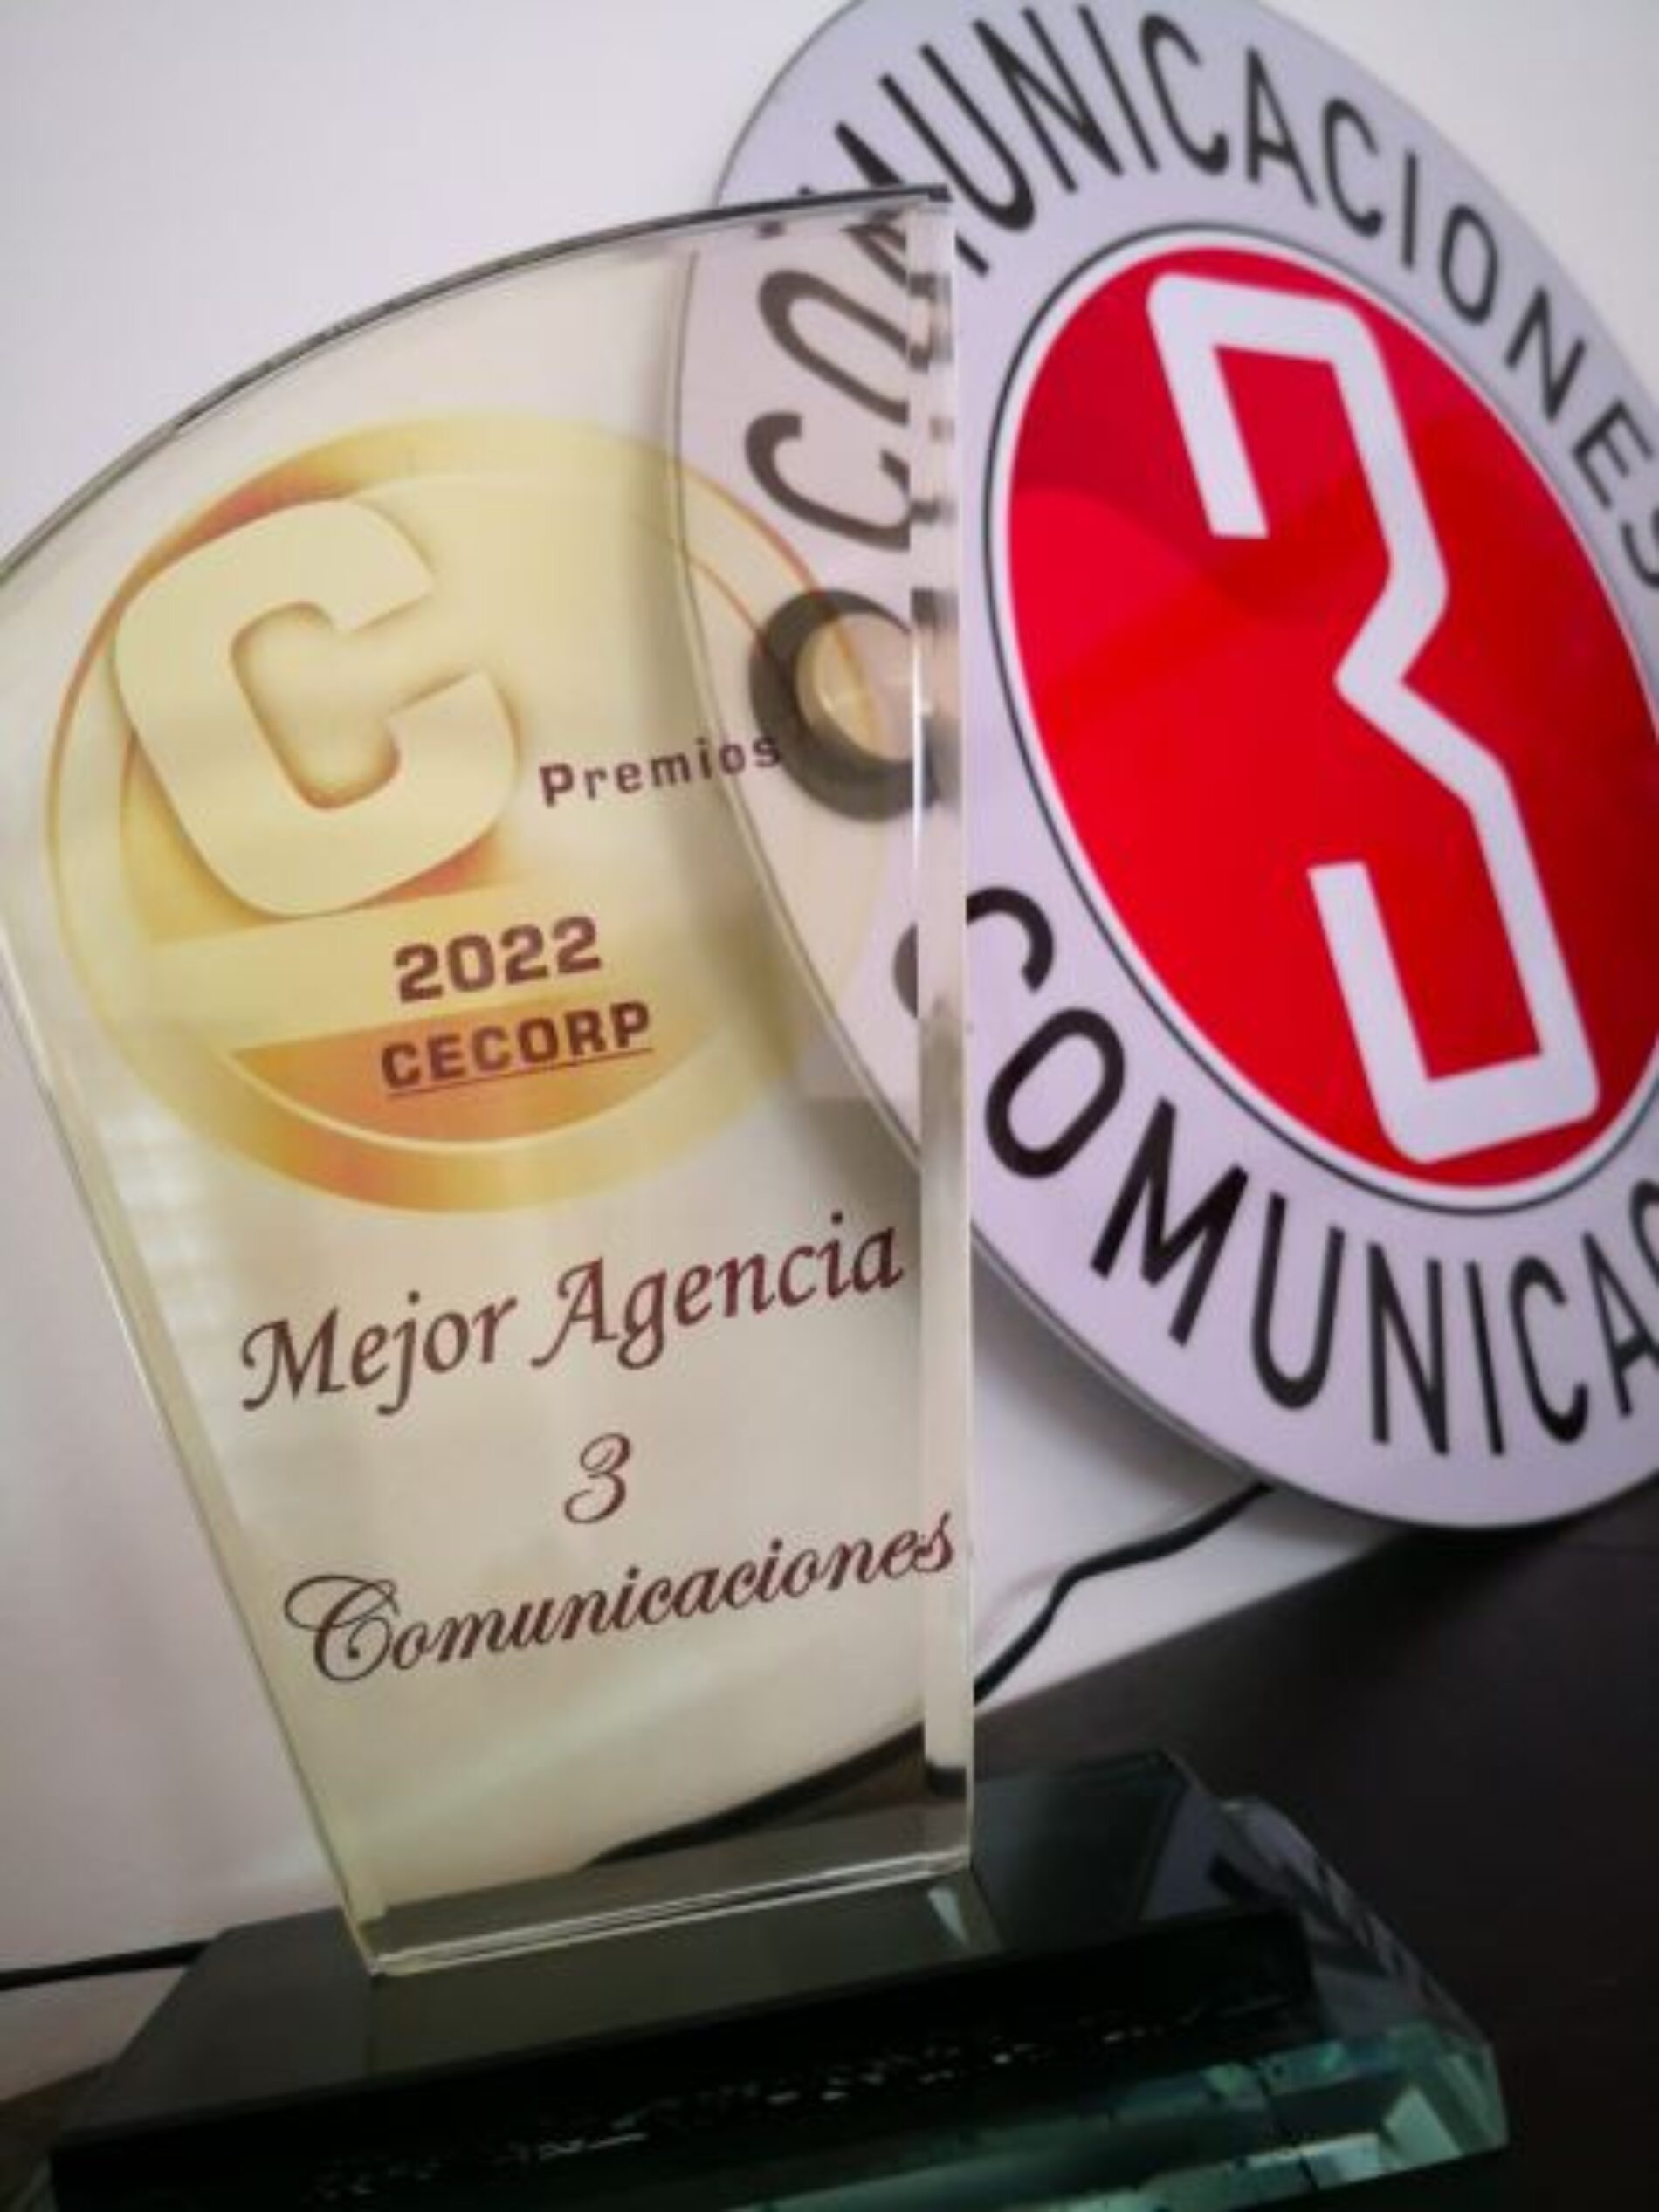 3comunicaciones: Mejor agencia Cecorp 2022